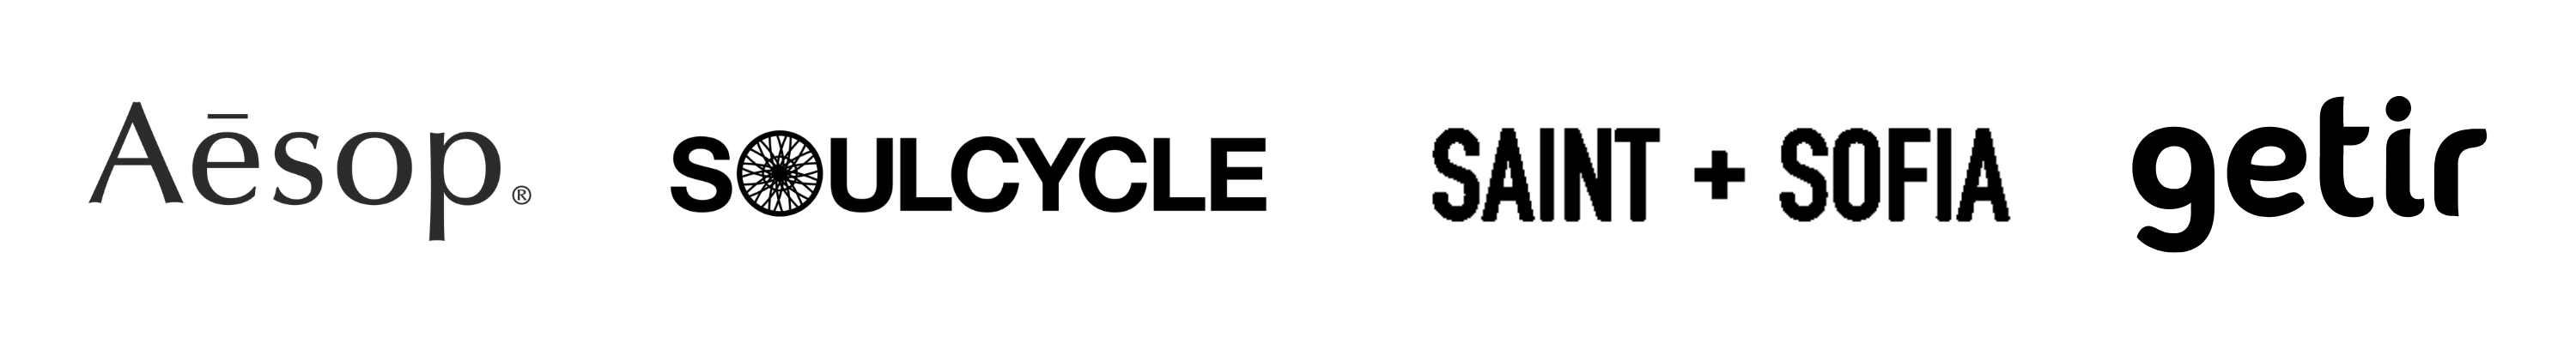 Laundry Republic Wesbite Logos